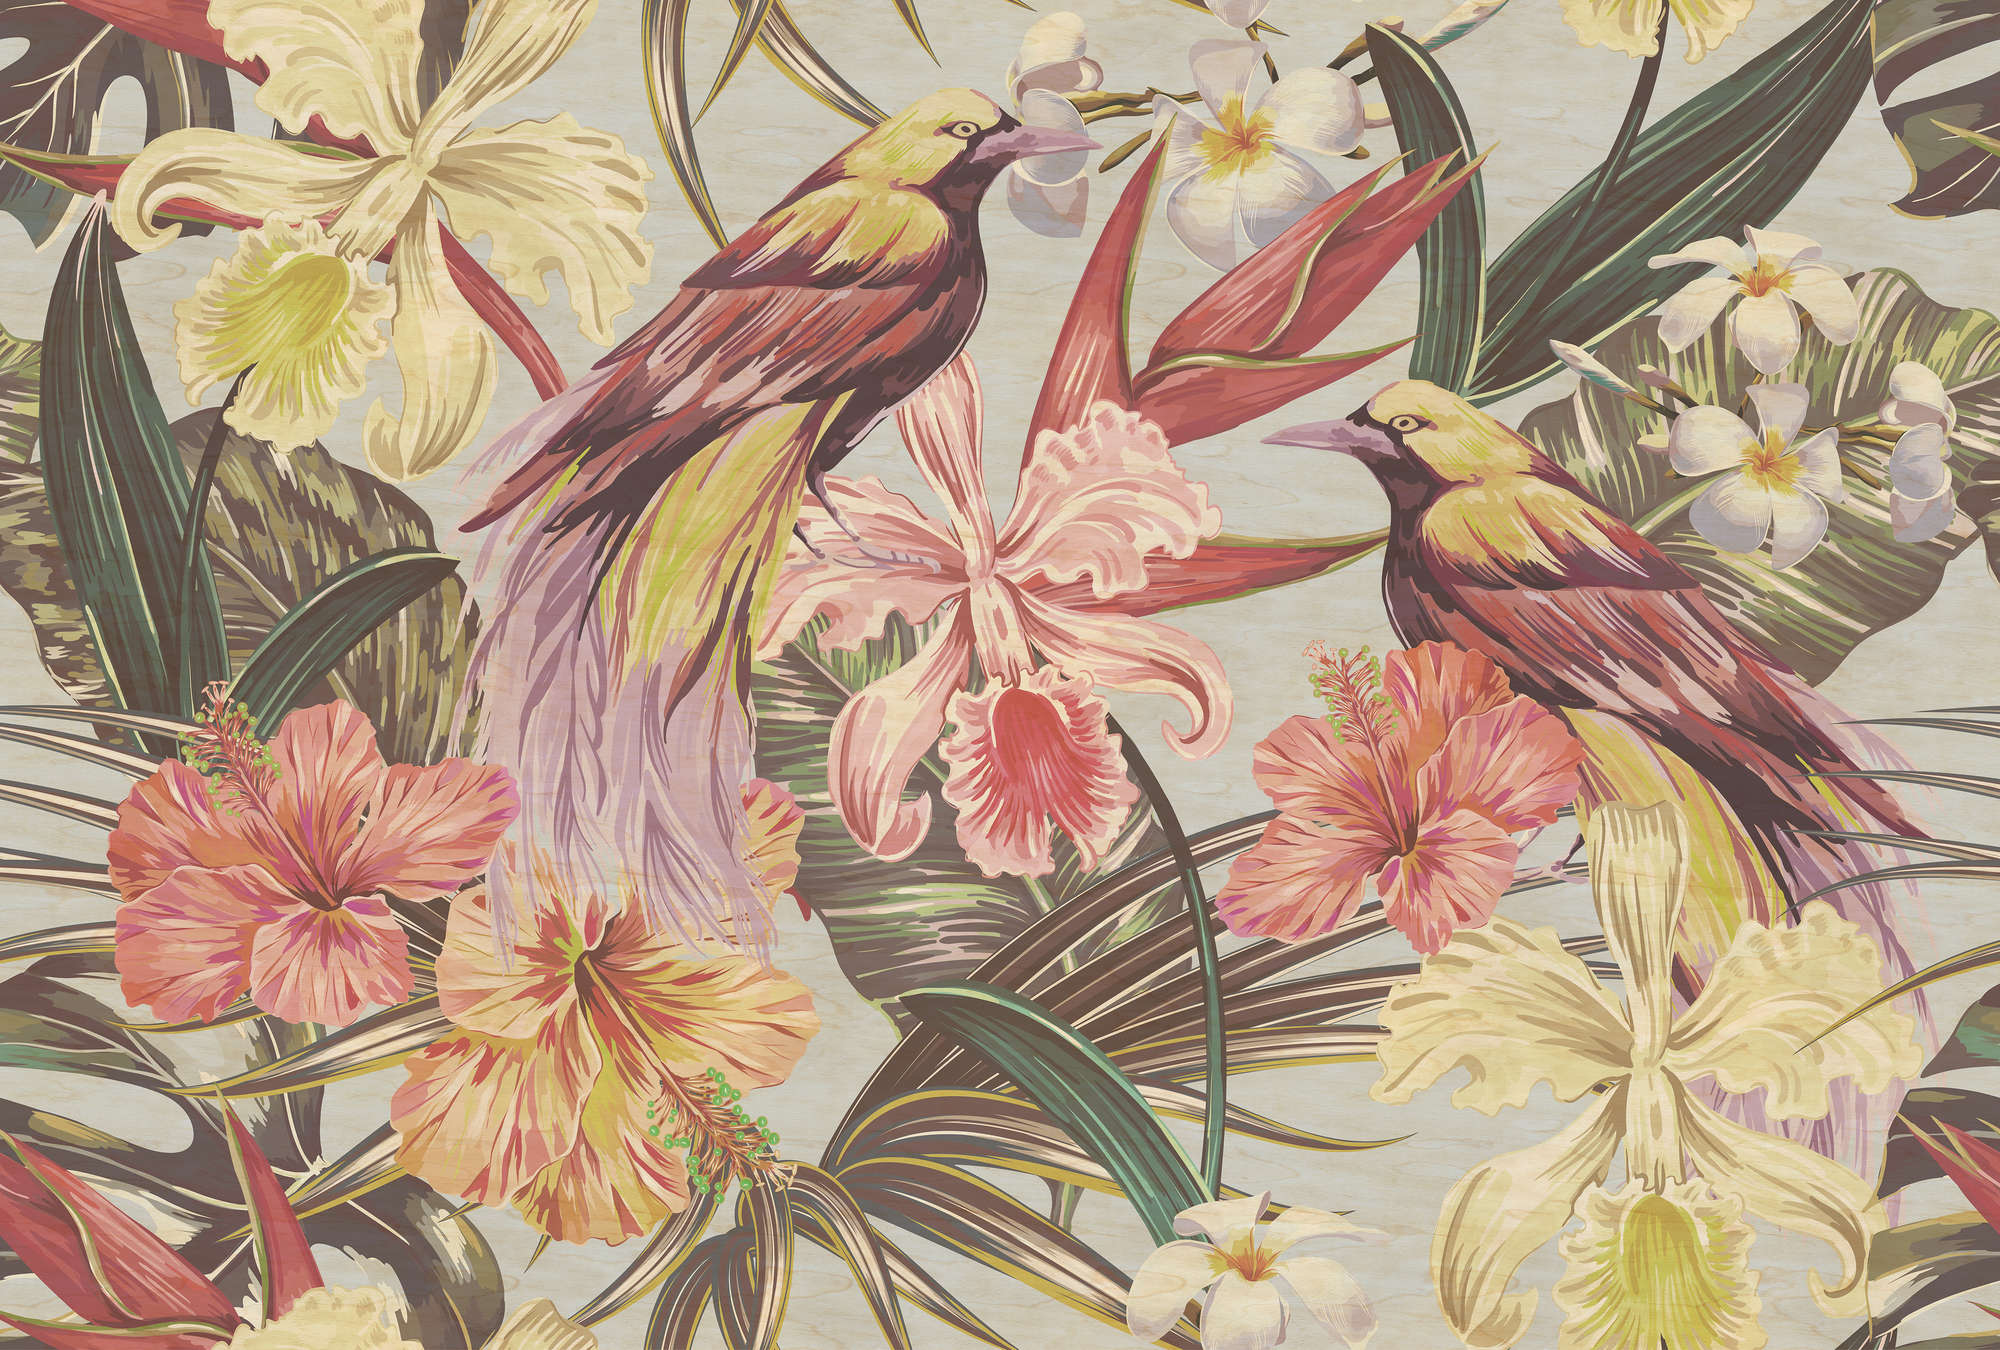             Exotische vogels 1 - Exotische vogels en bloemen behang in multiplex structuur - Beige, Roze | Mat glad vlies
        